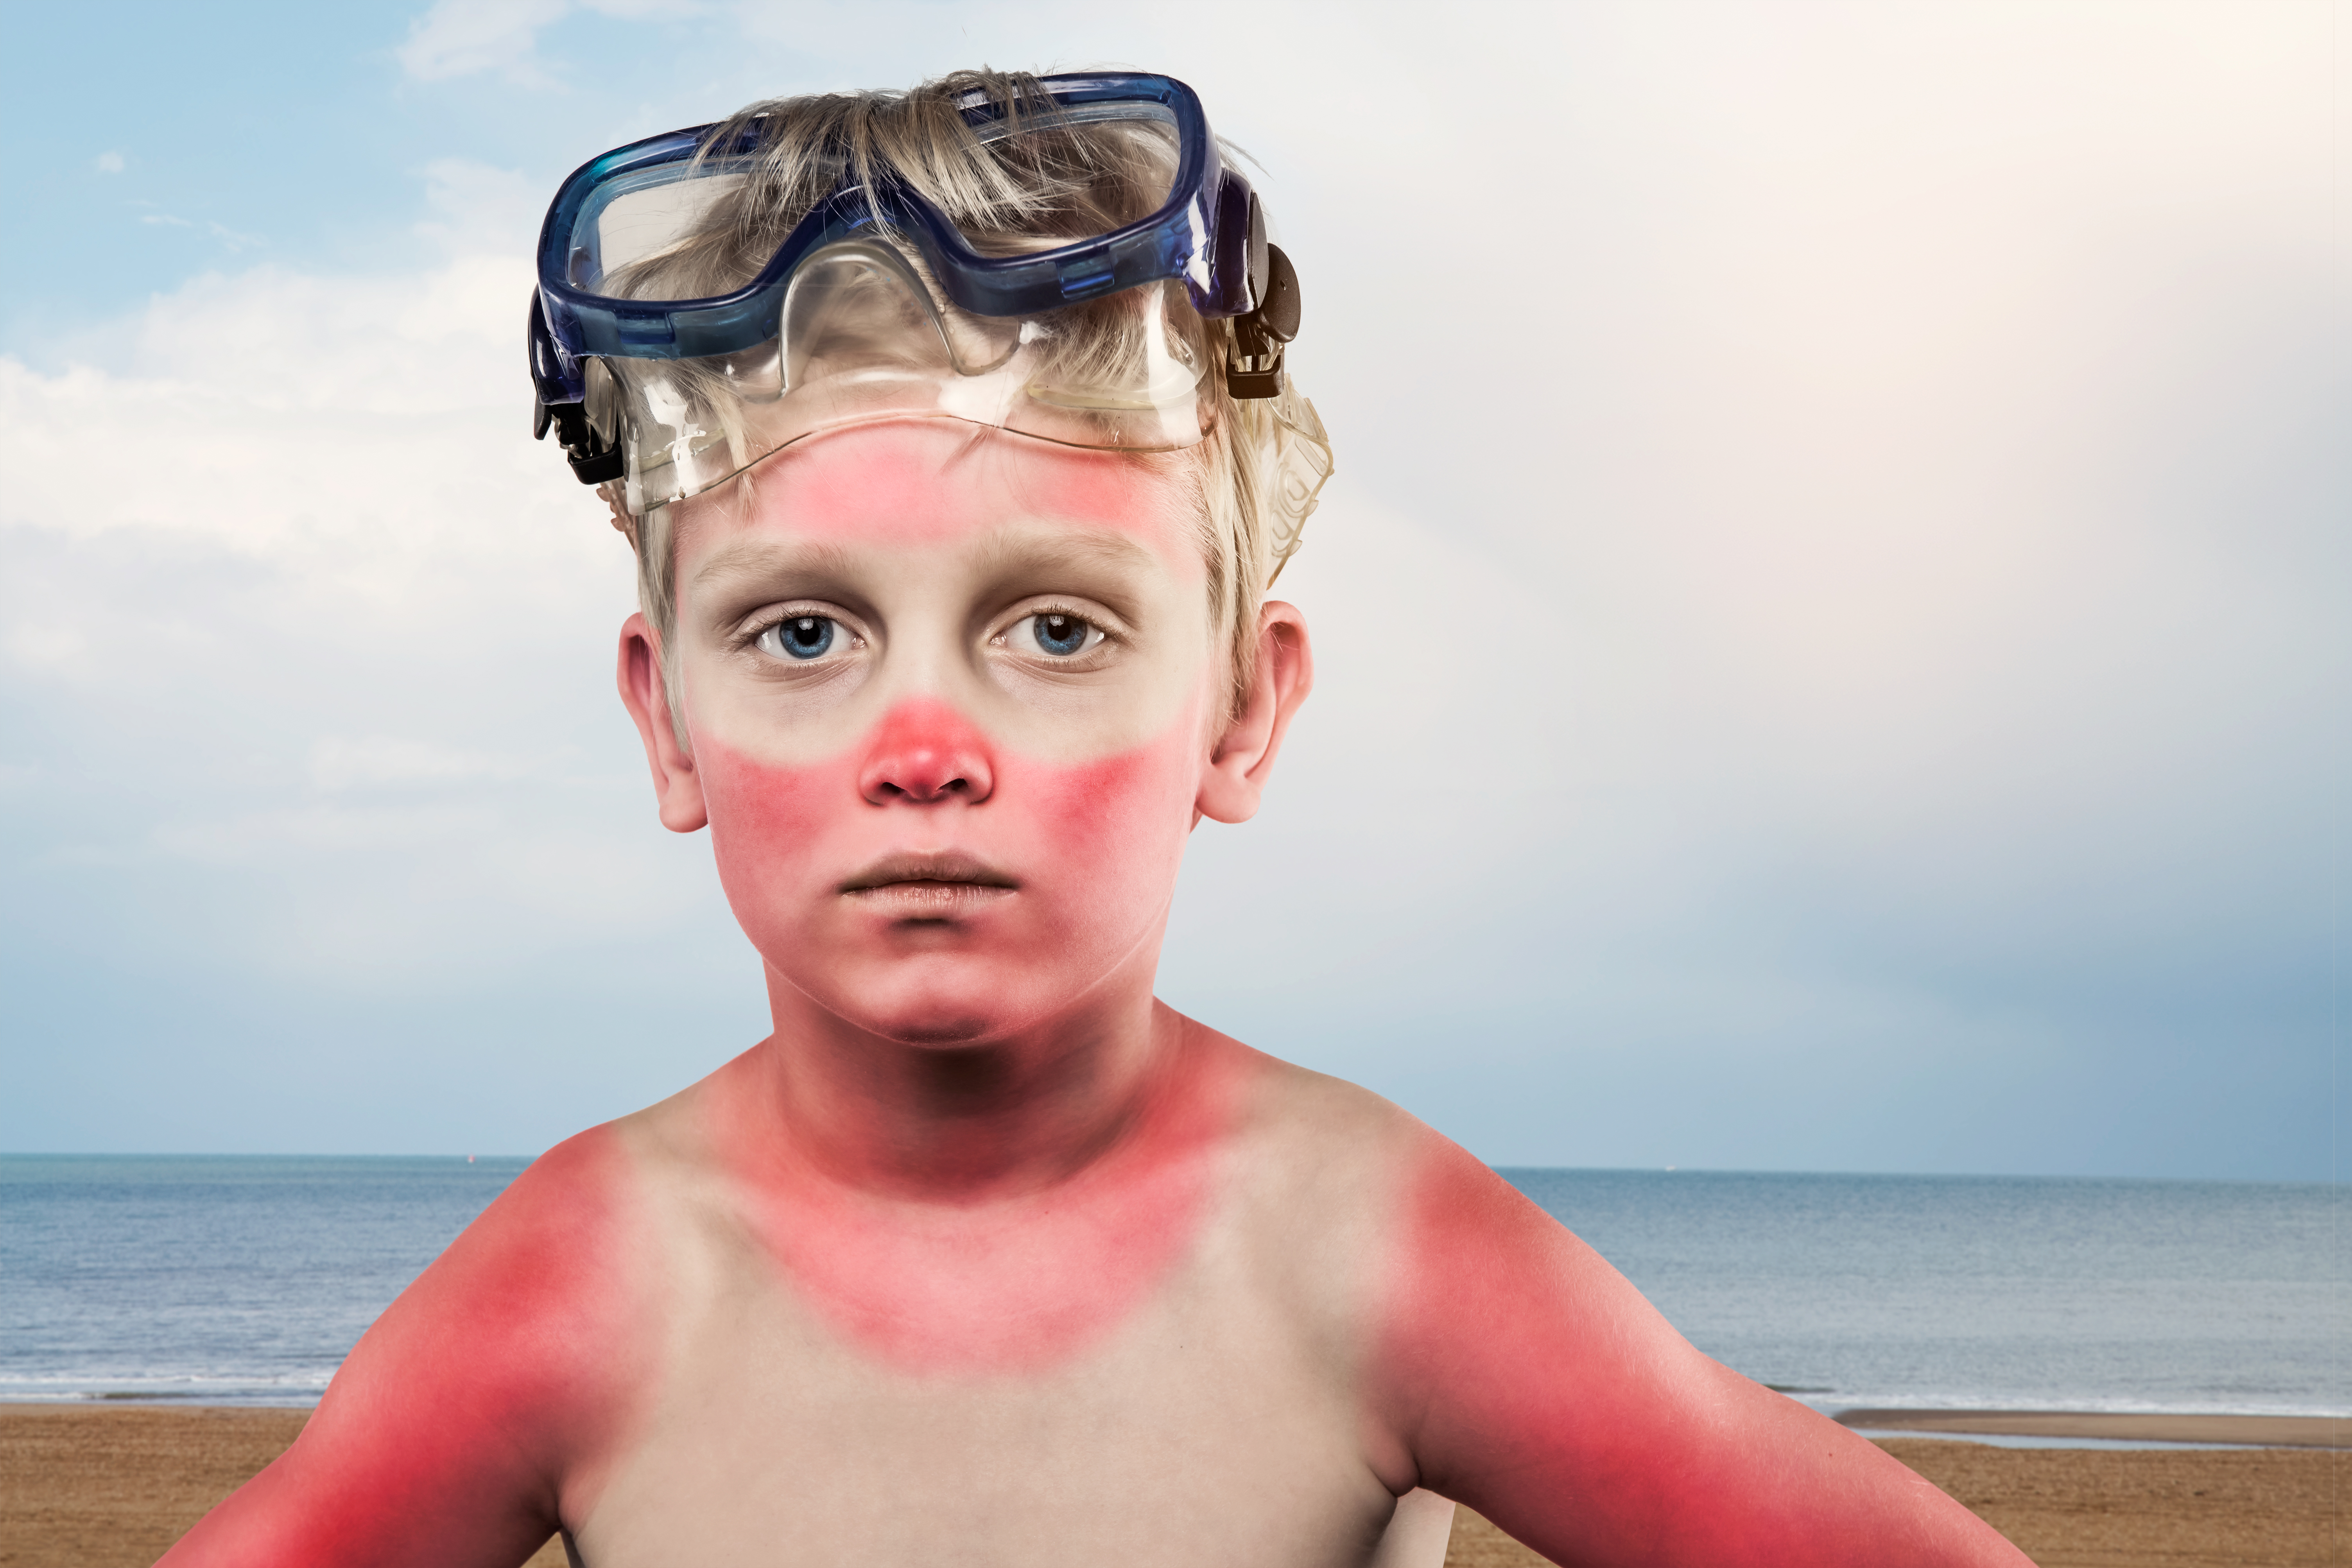 Sunburned boy